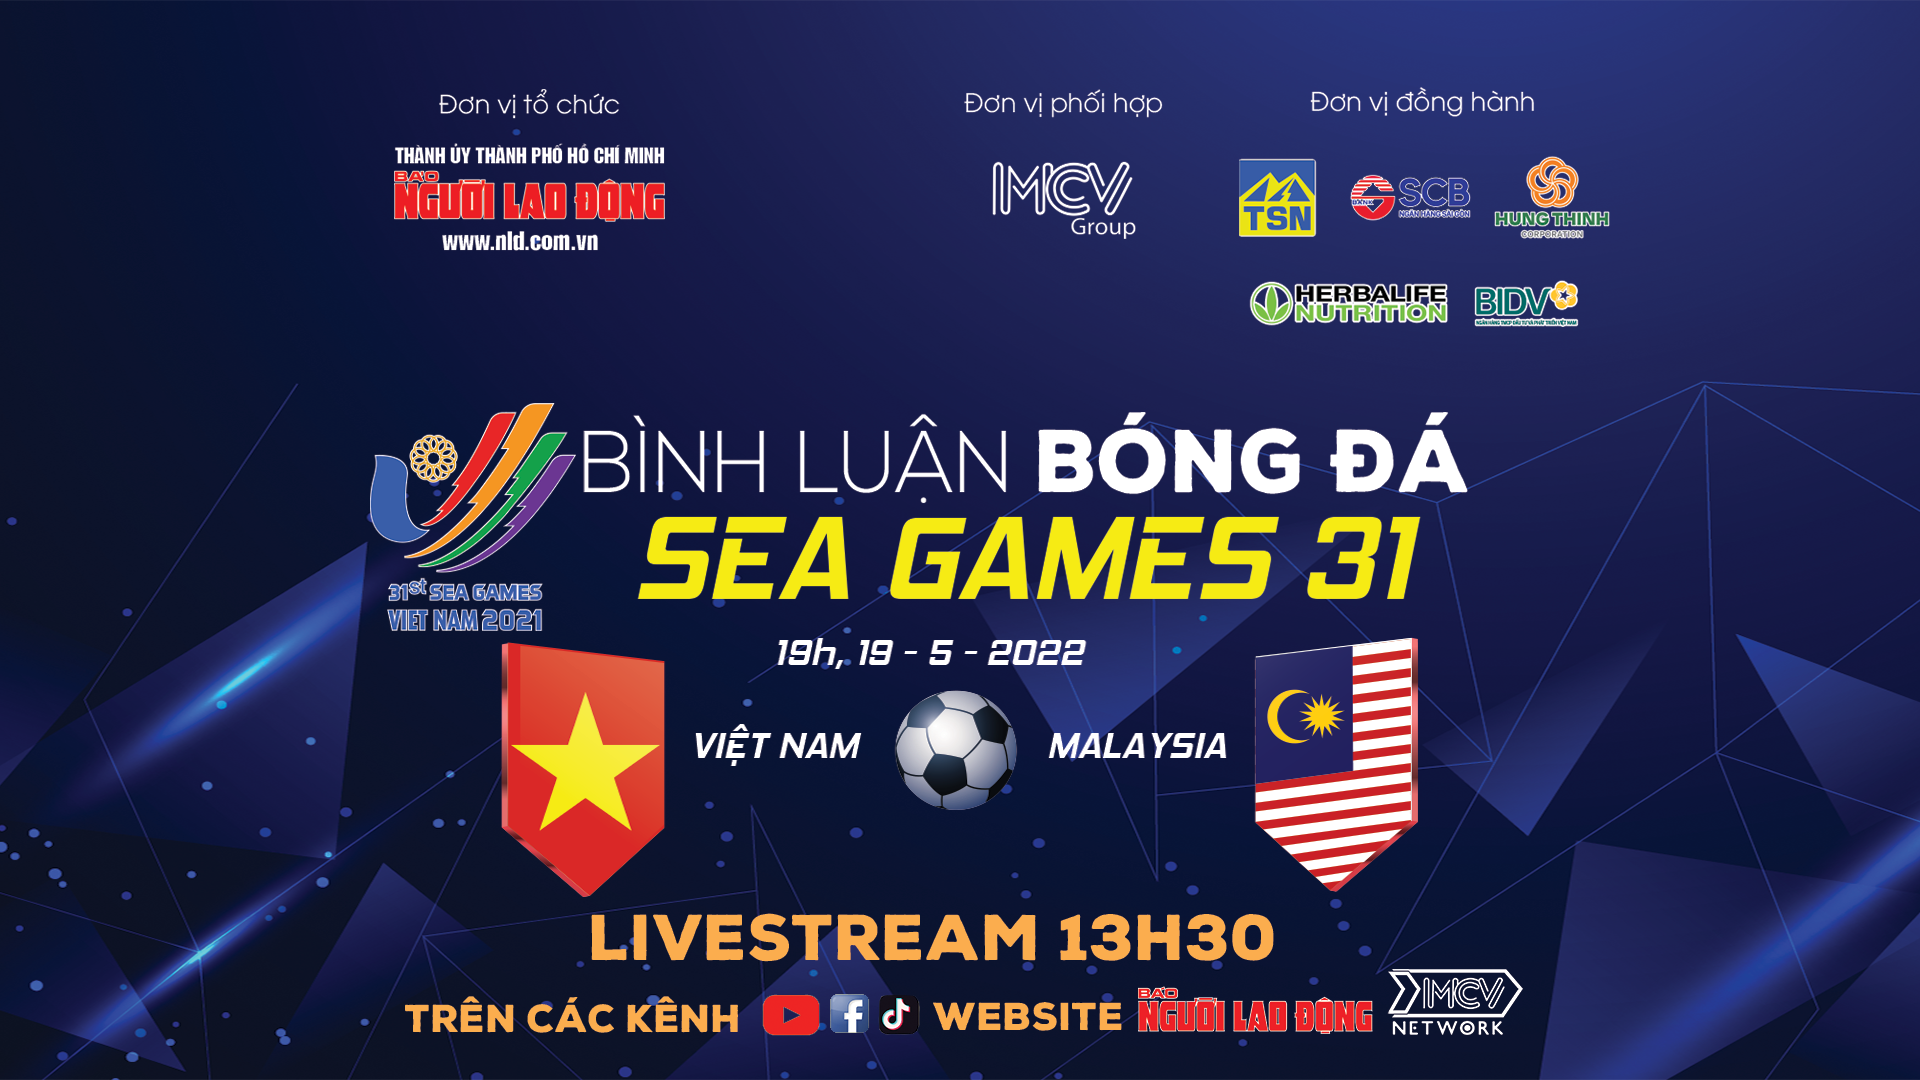 Bình luận bóng đá SEA Games 31: U23 Việt Nam mở toang cửa chung kết - Ảnh 1.